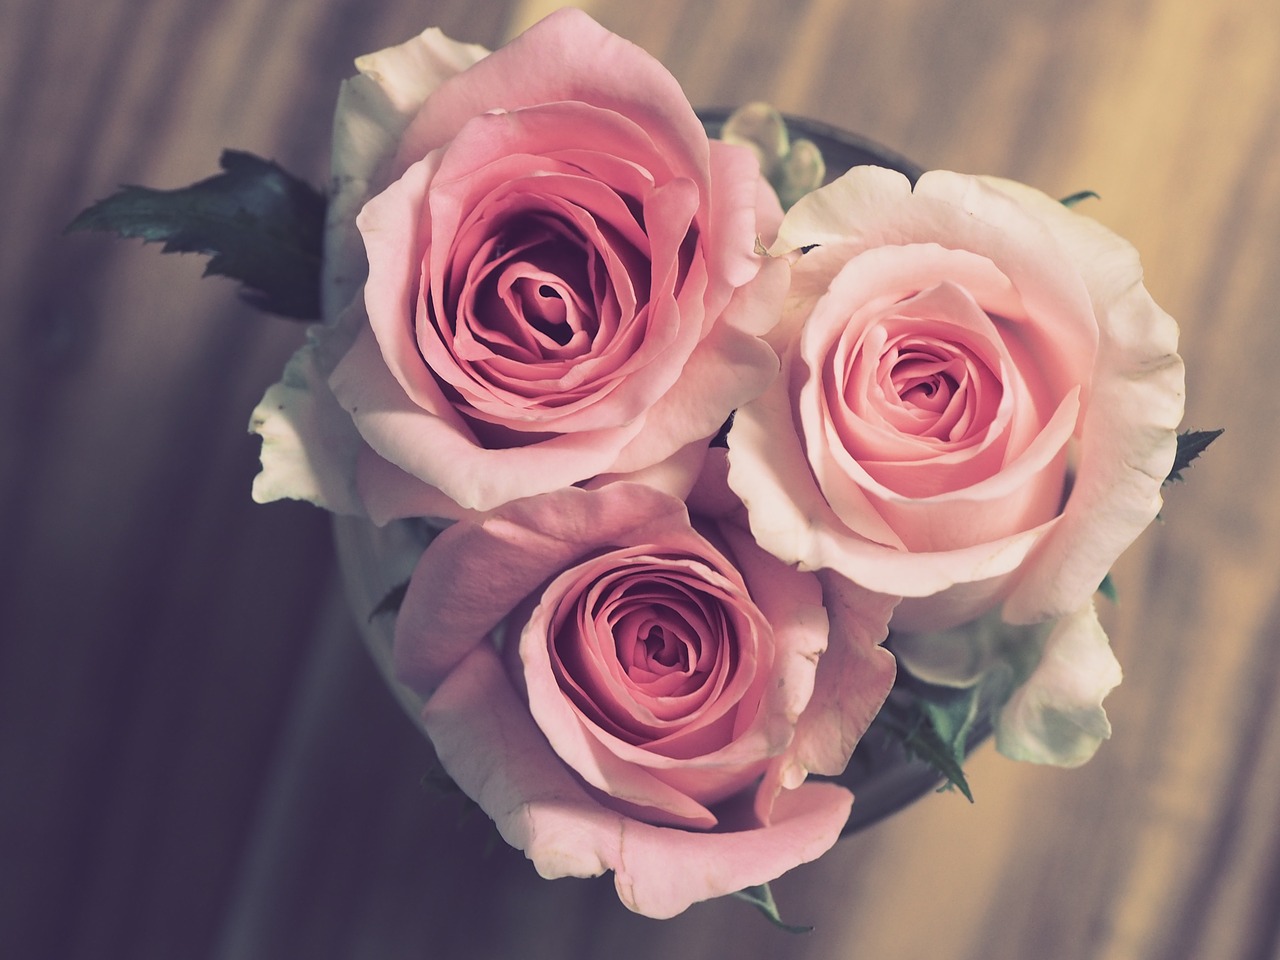 roses, pink, flowers-3072698.jpg